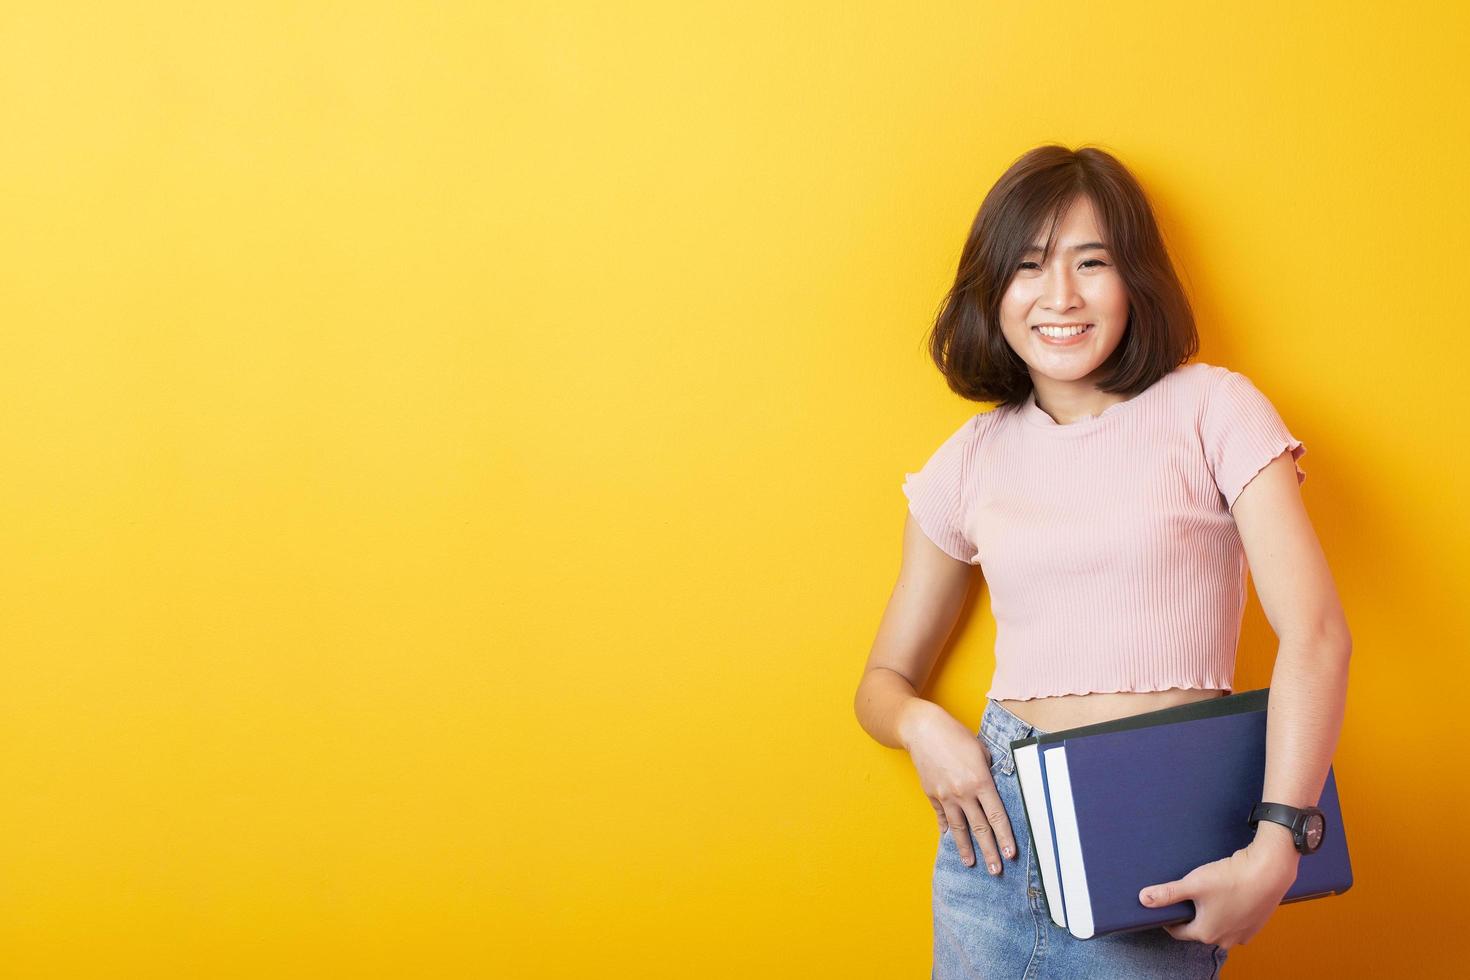 bela mulher asiática estudante universitário feliz em fundo amarelo foto